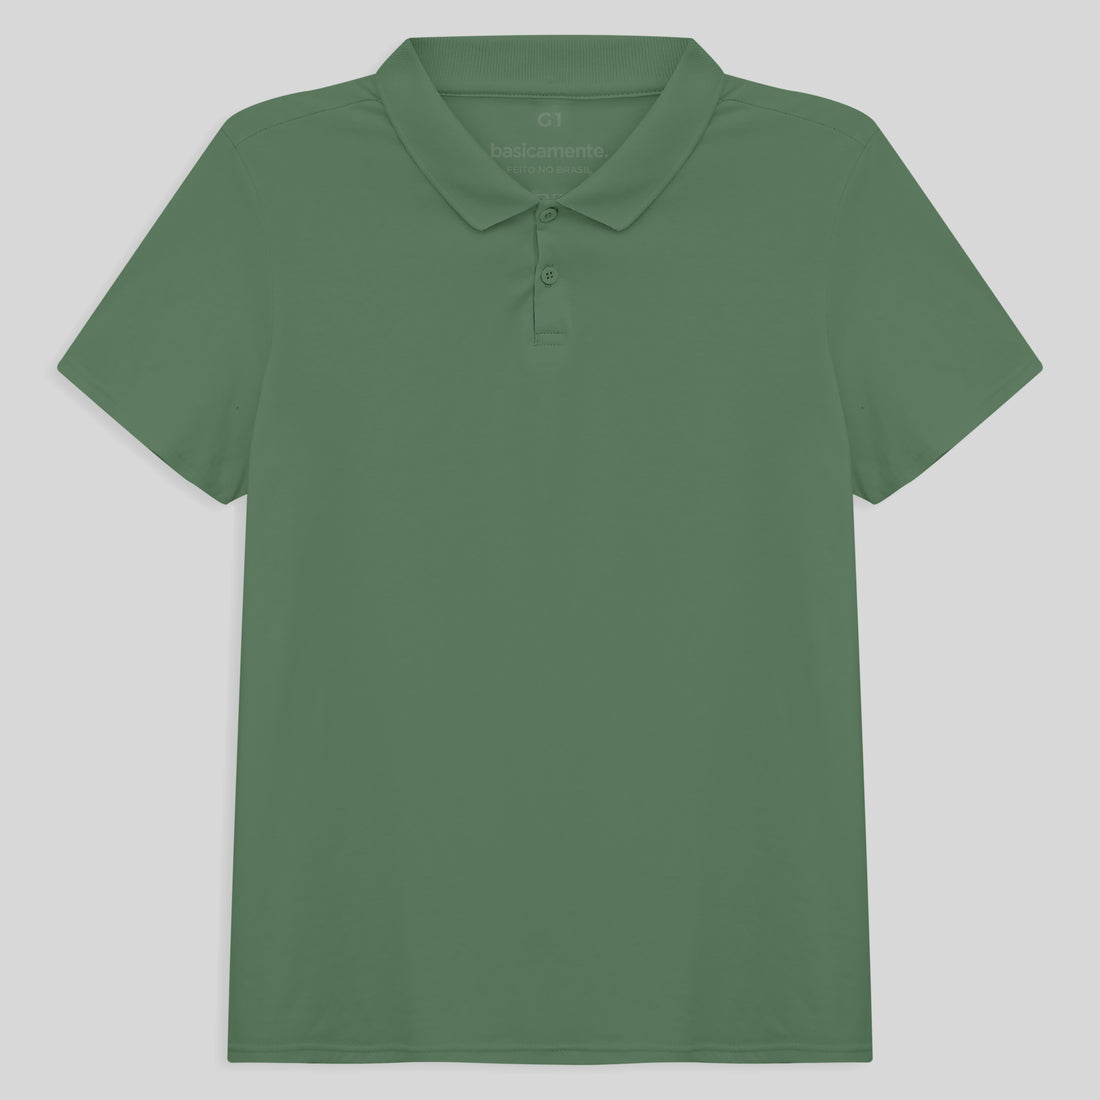 Camisa Polo Plus Size Feminina - Verde Oliva